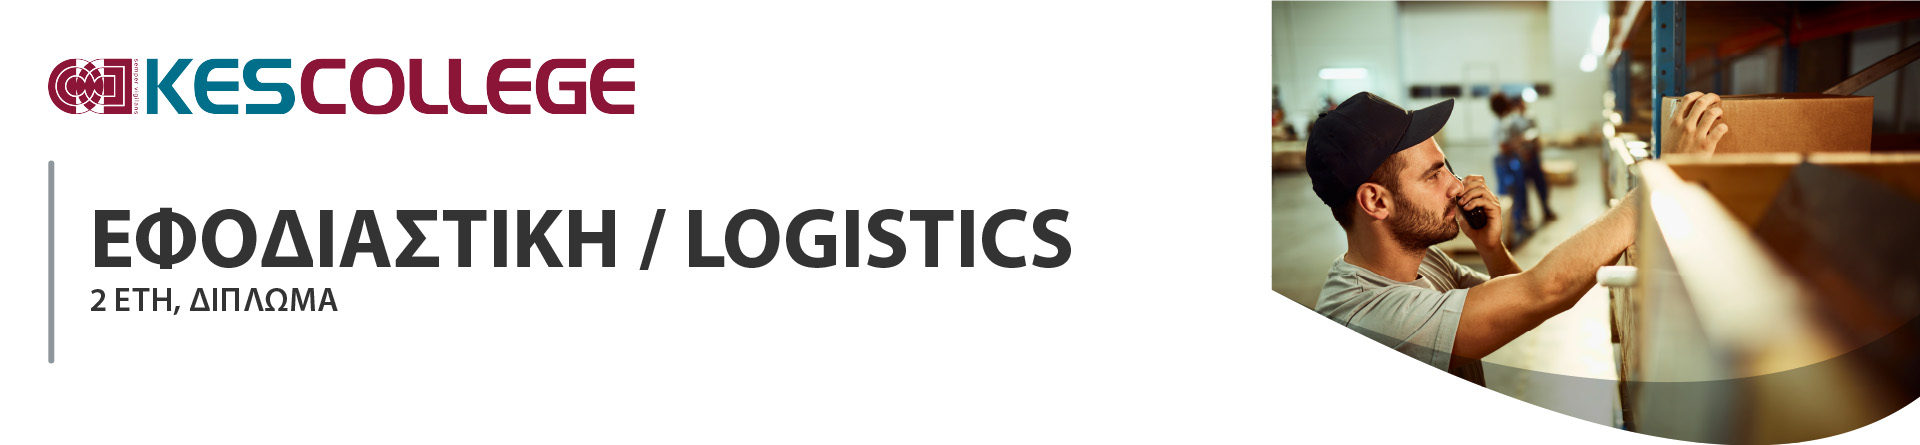 Εφοδιαστική / Logistics